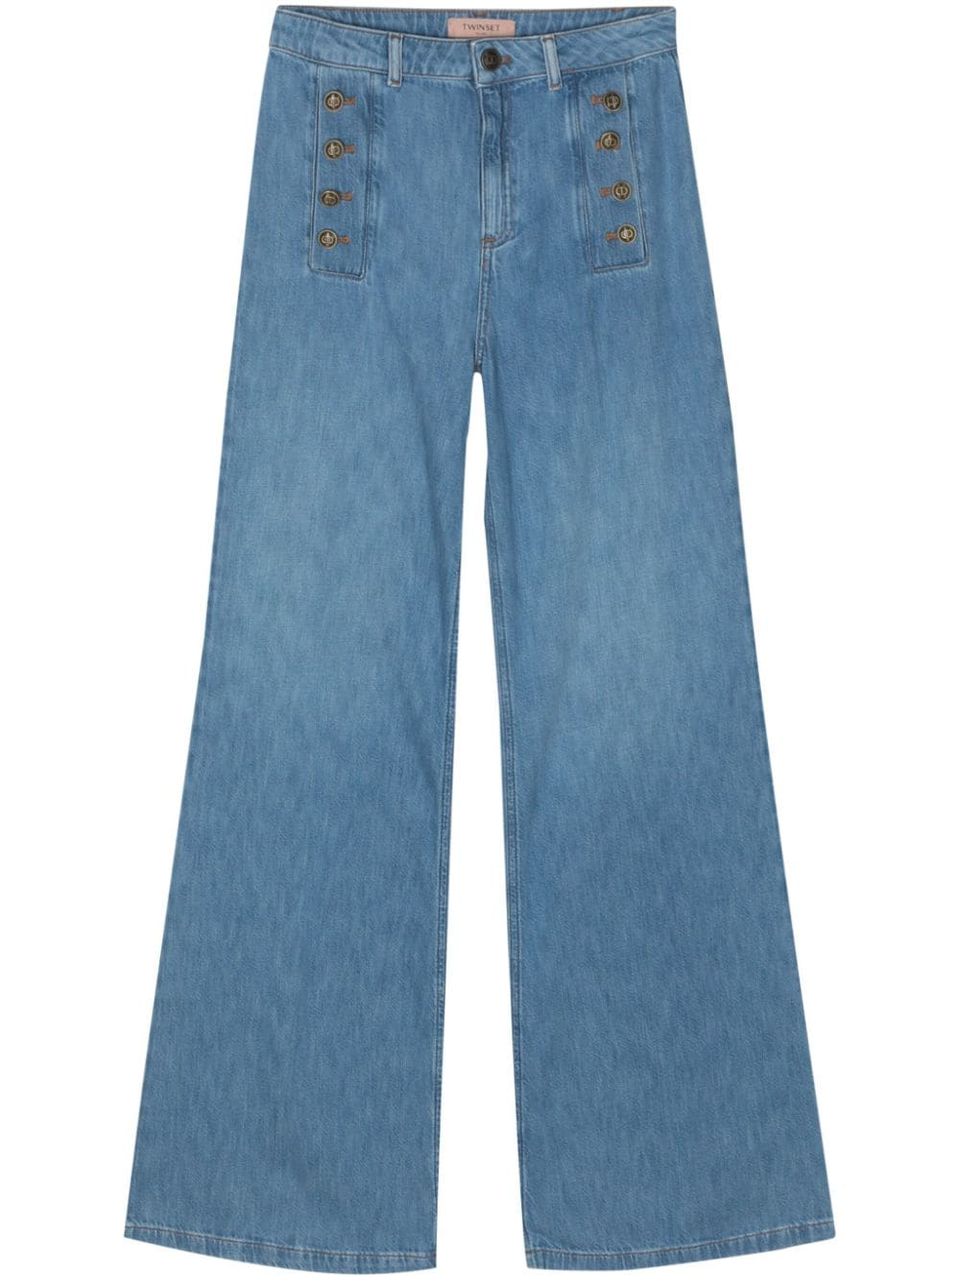 Button detail jeans